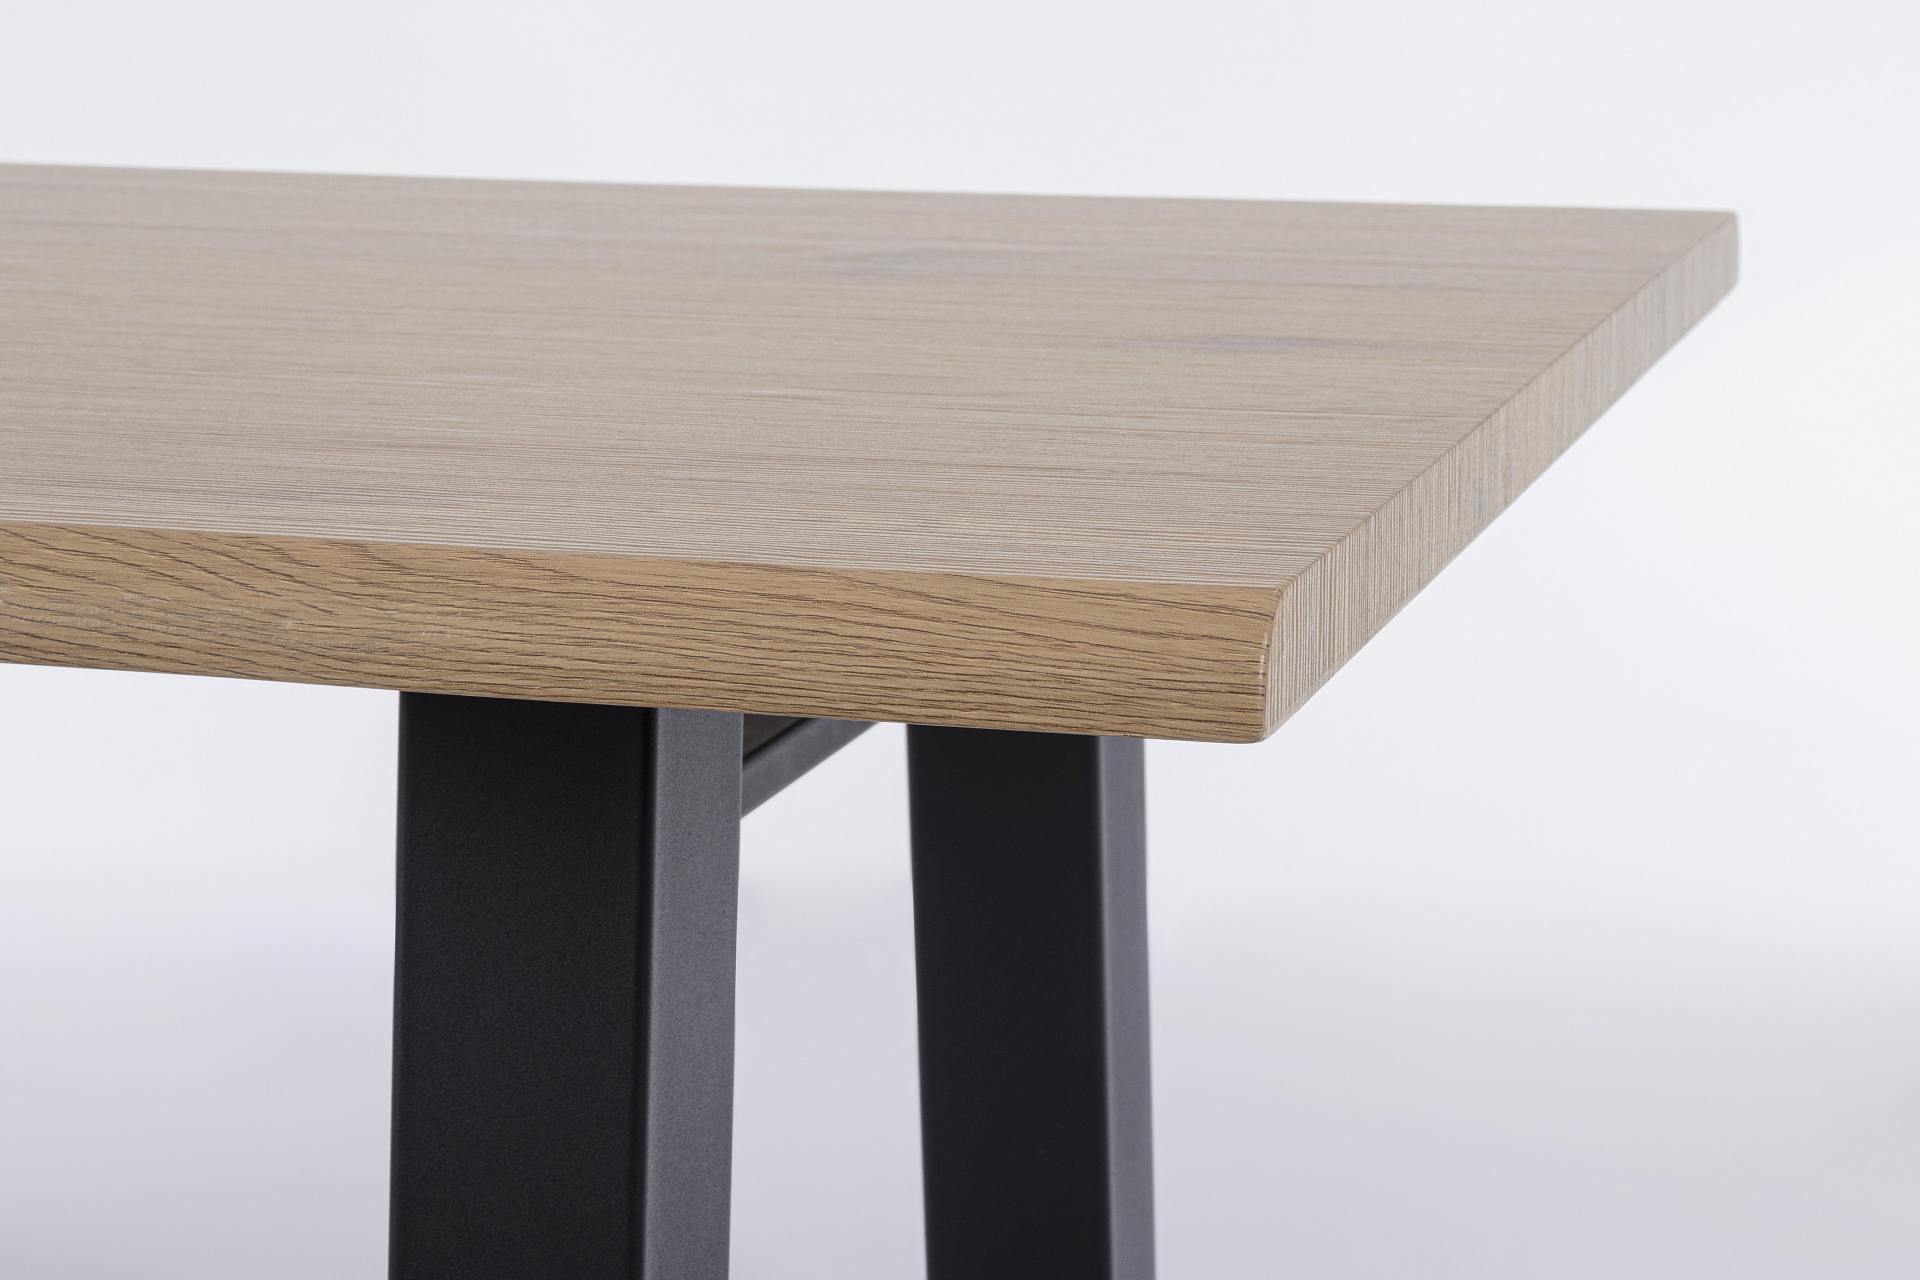 Der Esstisch Fred überzeugt mit seinem klassischem Design. Gefertigt wurde er aus MDF, welches eine Holz-Optik besitzt. Das Gestell des Tisches ist aus Metall und besitzt eine schwarze Farbe. Der Tisch hat eine Breite von 180 cm.